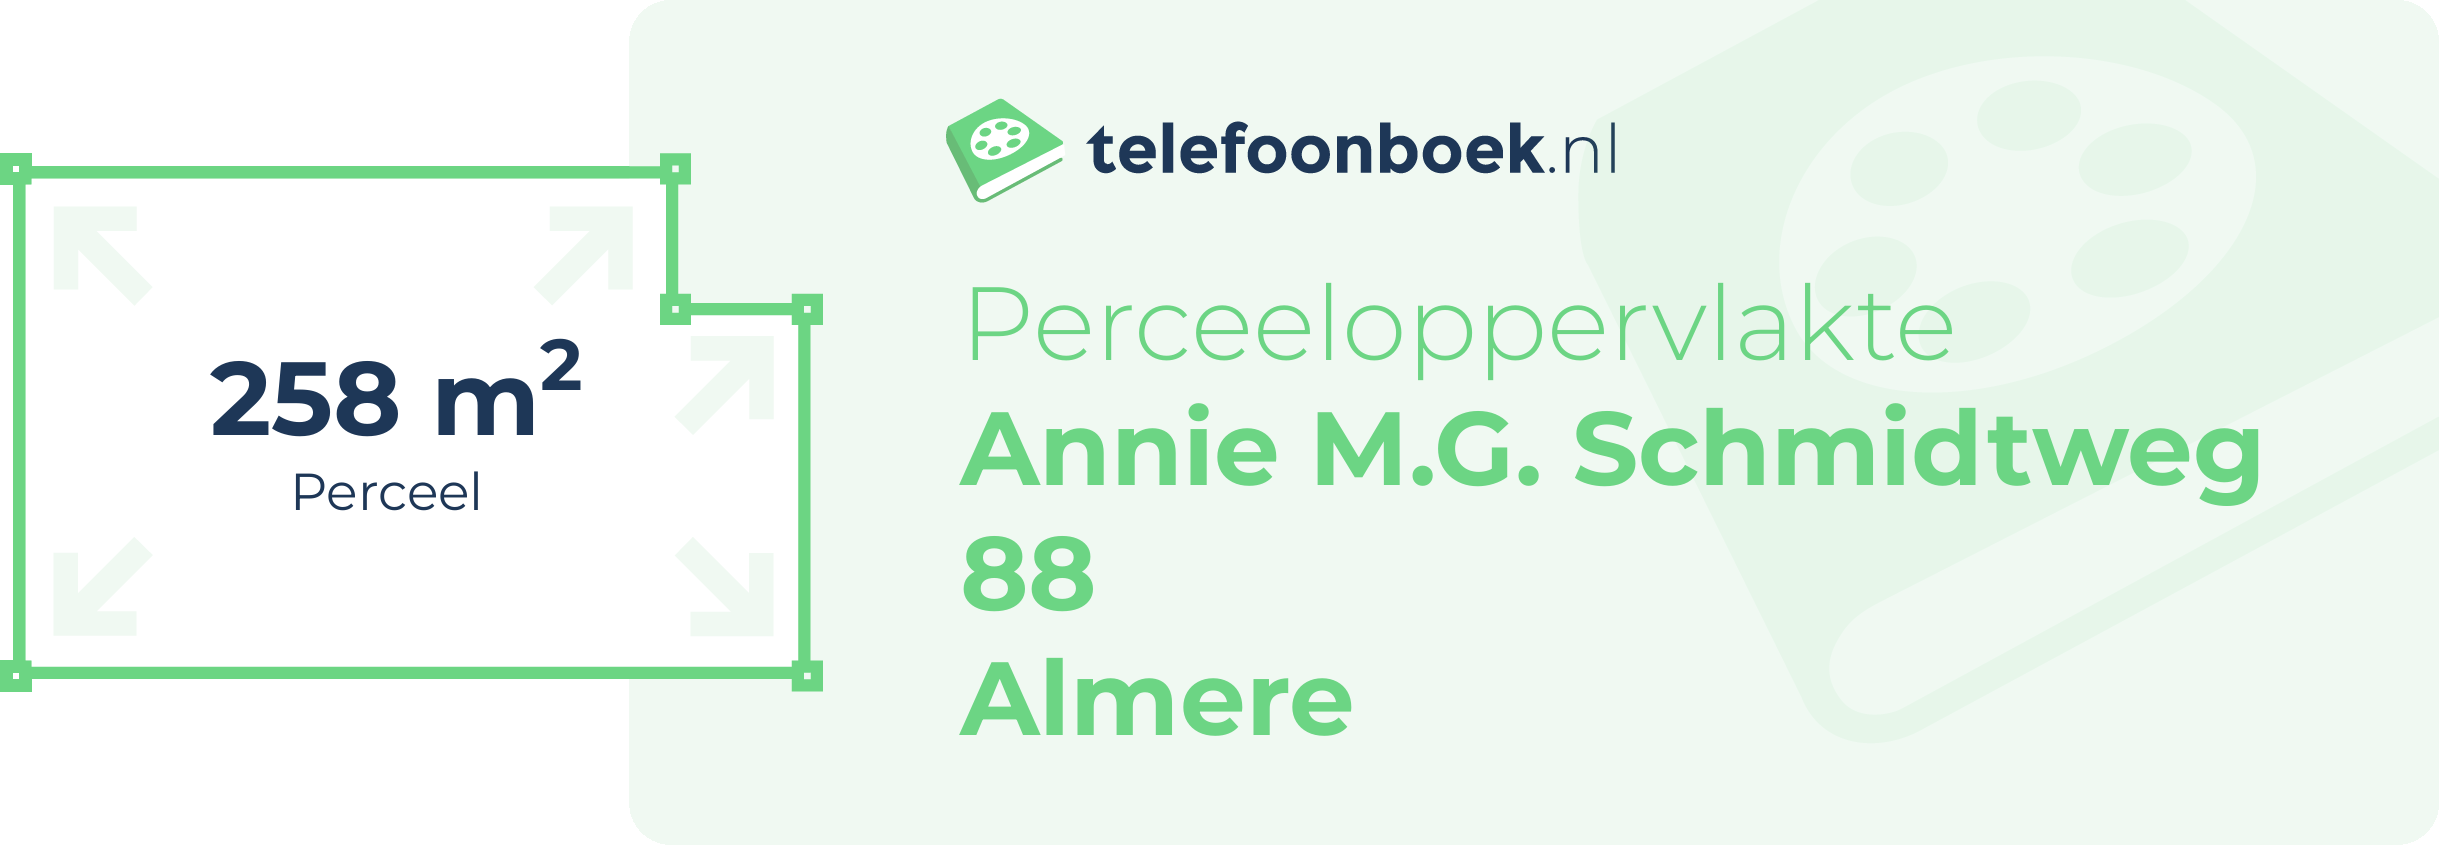 Perceeloppervlakte Annie M.G. Schmidtweg 88 Almere